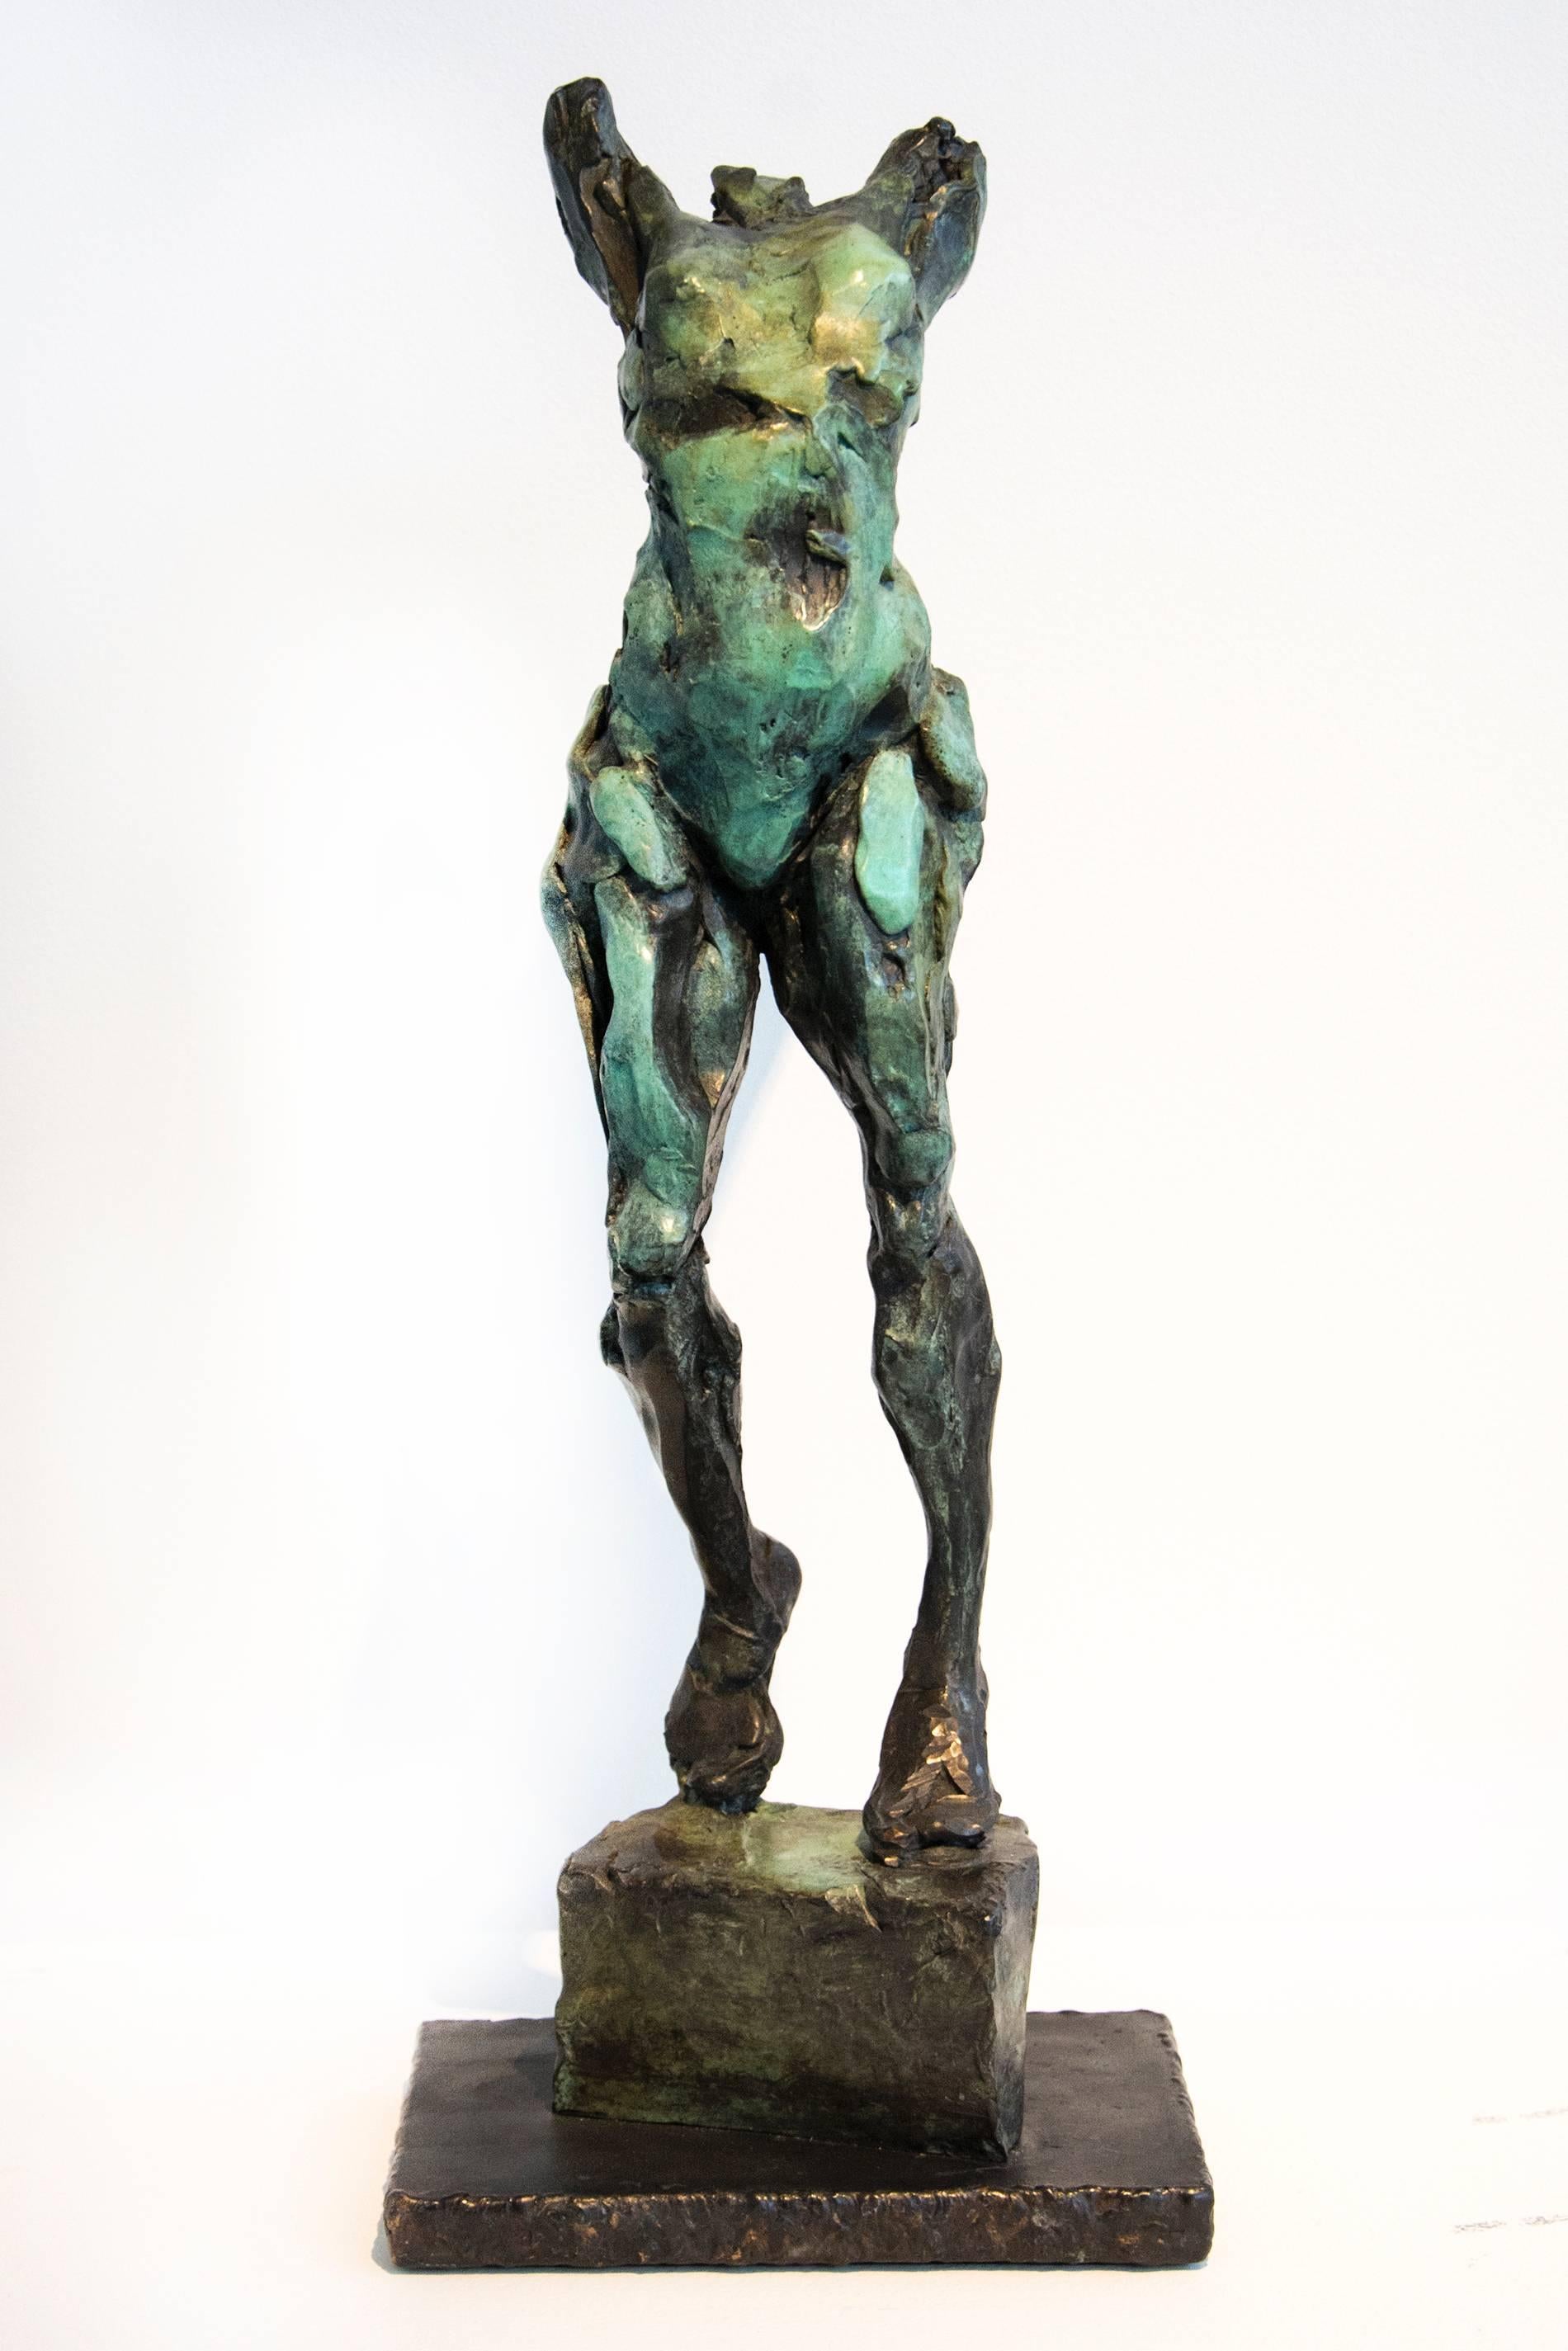 The Pleiades-Alcyone AP/12 - Emotiv, nackt, weiblich, figurativ, Bronzestatuette – Sculpture von Richard Tosczak